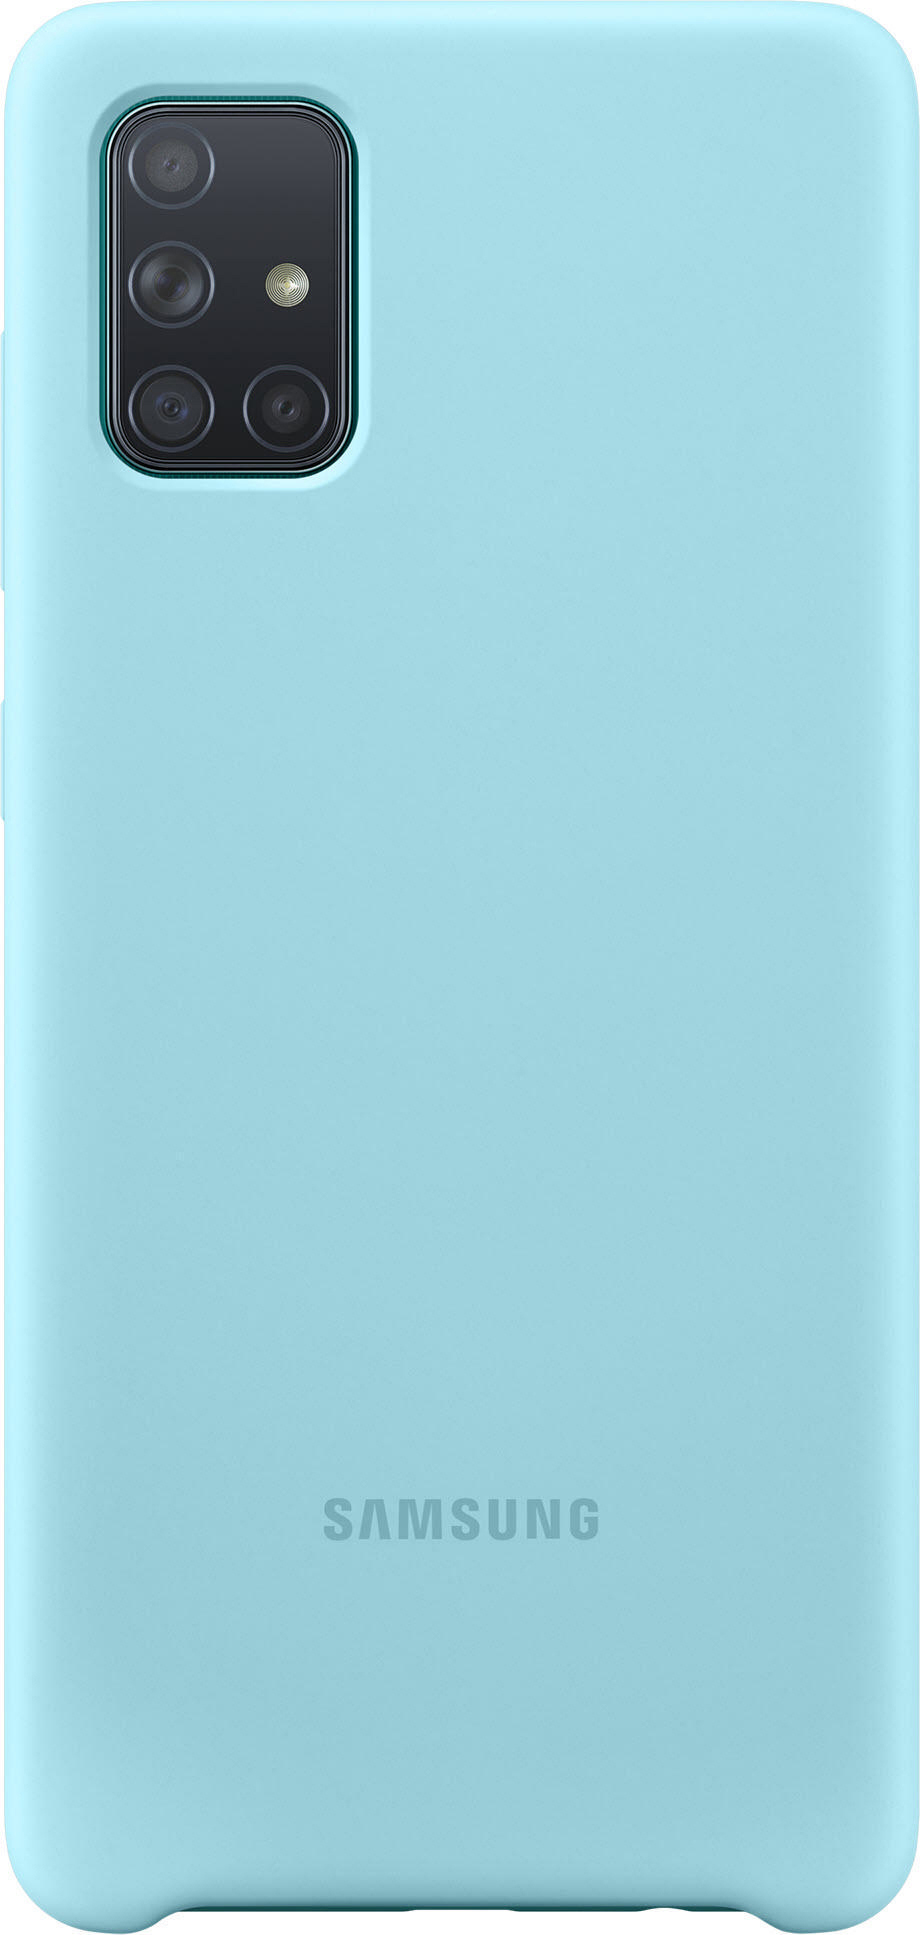 SAMSUNG Blau Galaxy Backcover, EF-PA715, Samsung, A71,